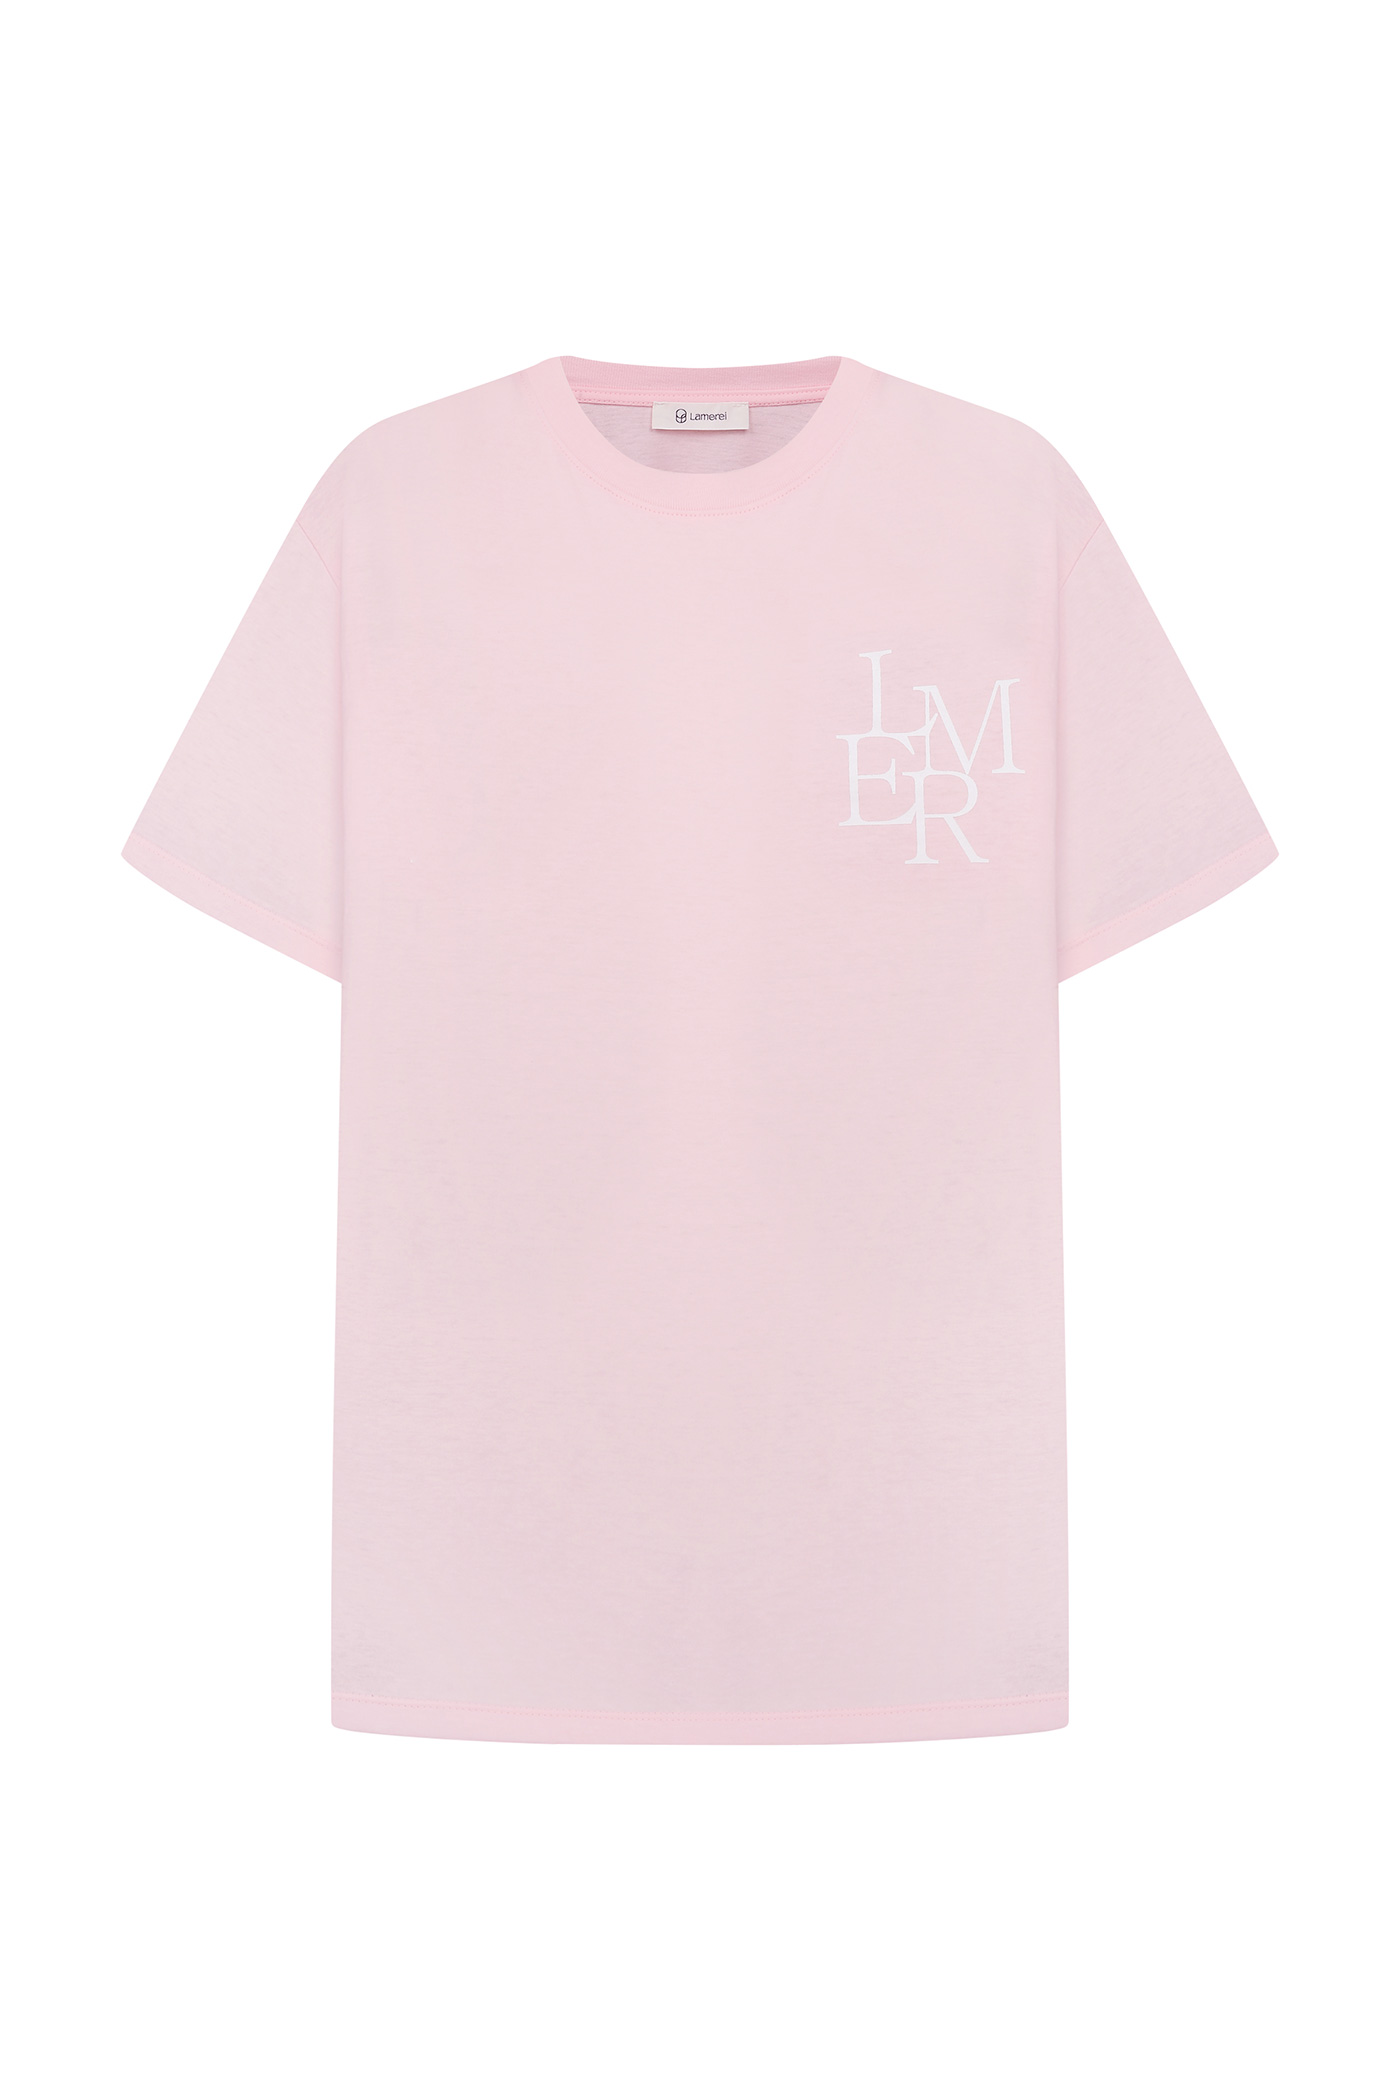 LMER Top-Light Pink